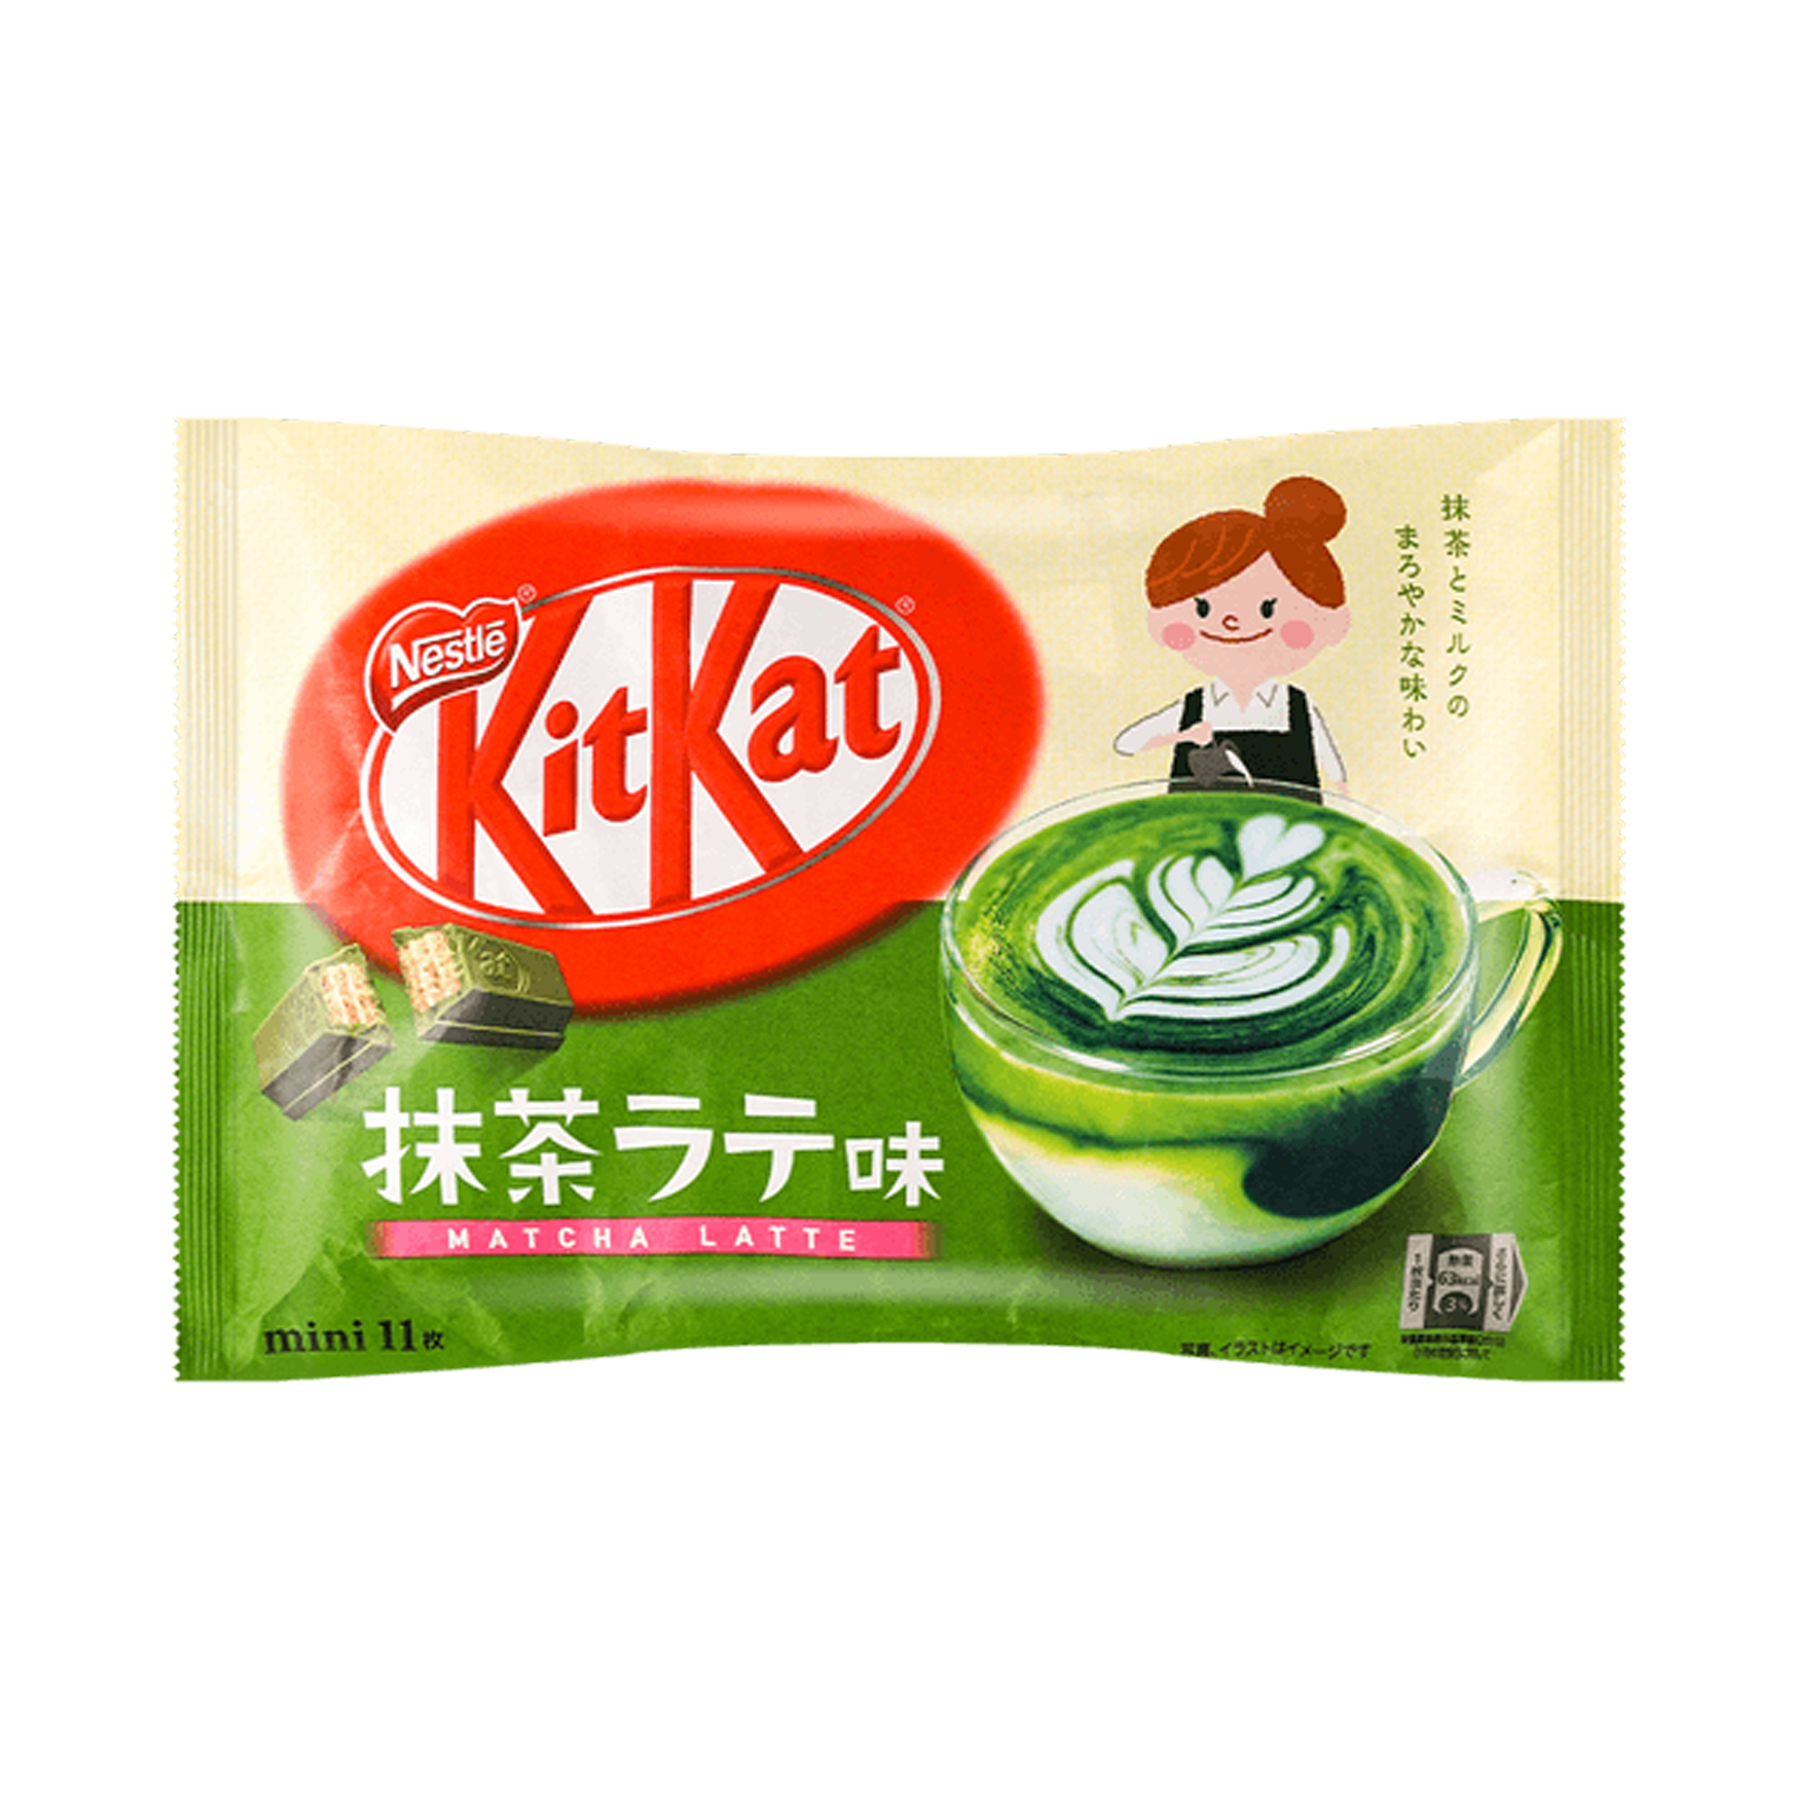 Kitkat Matcha Latte Flavor